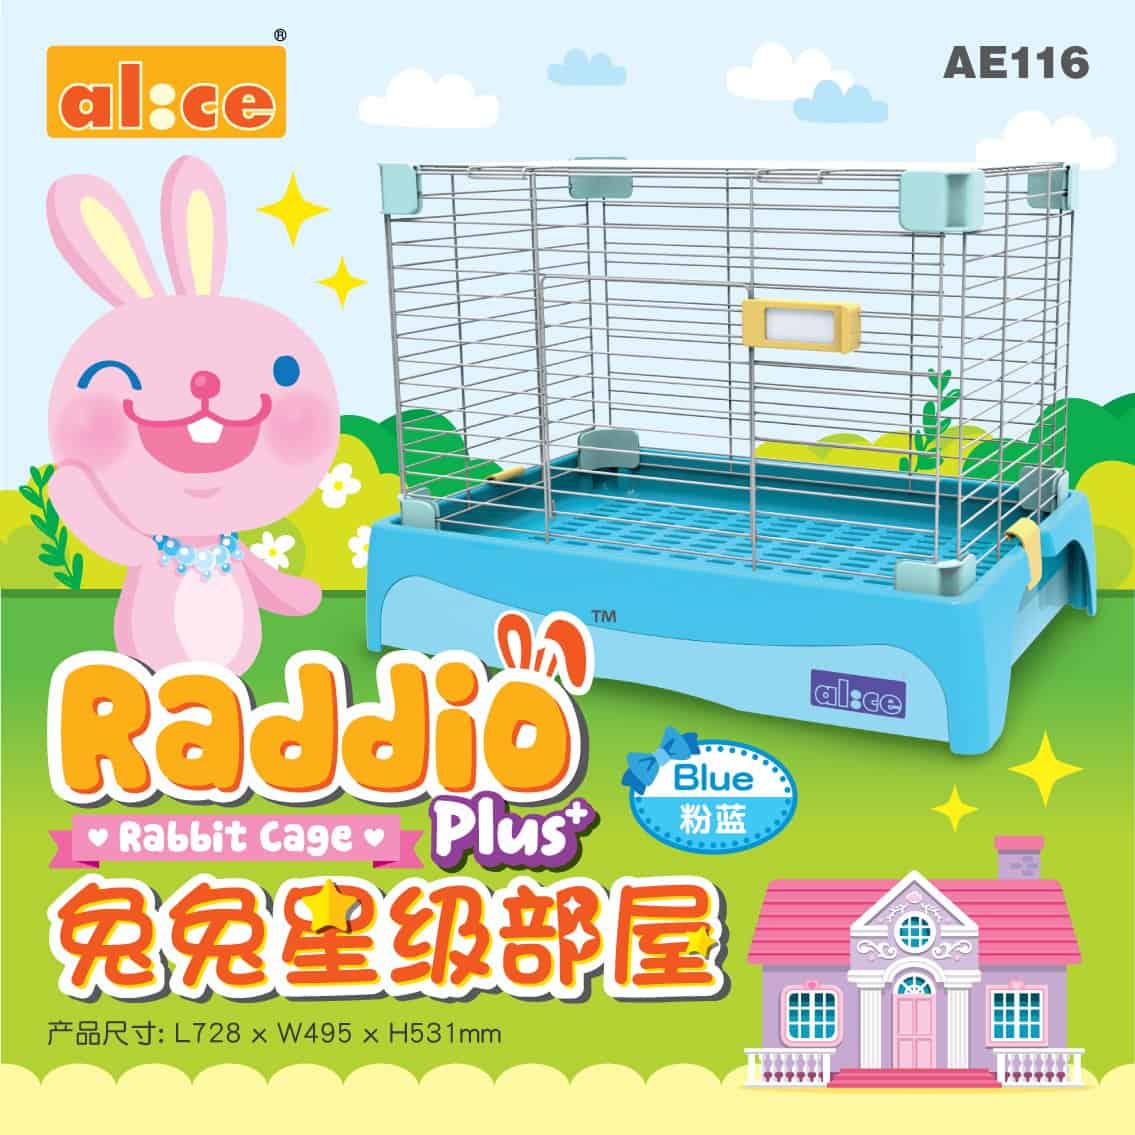 Alice AE116 Raddio Plus+ Rabbit Cage Blue